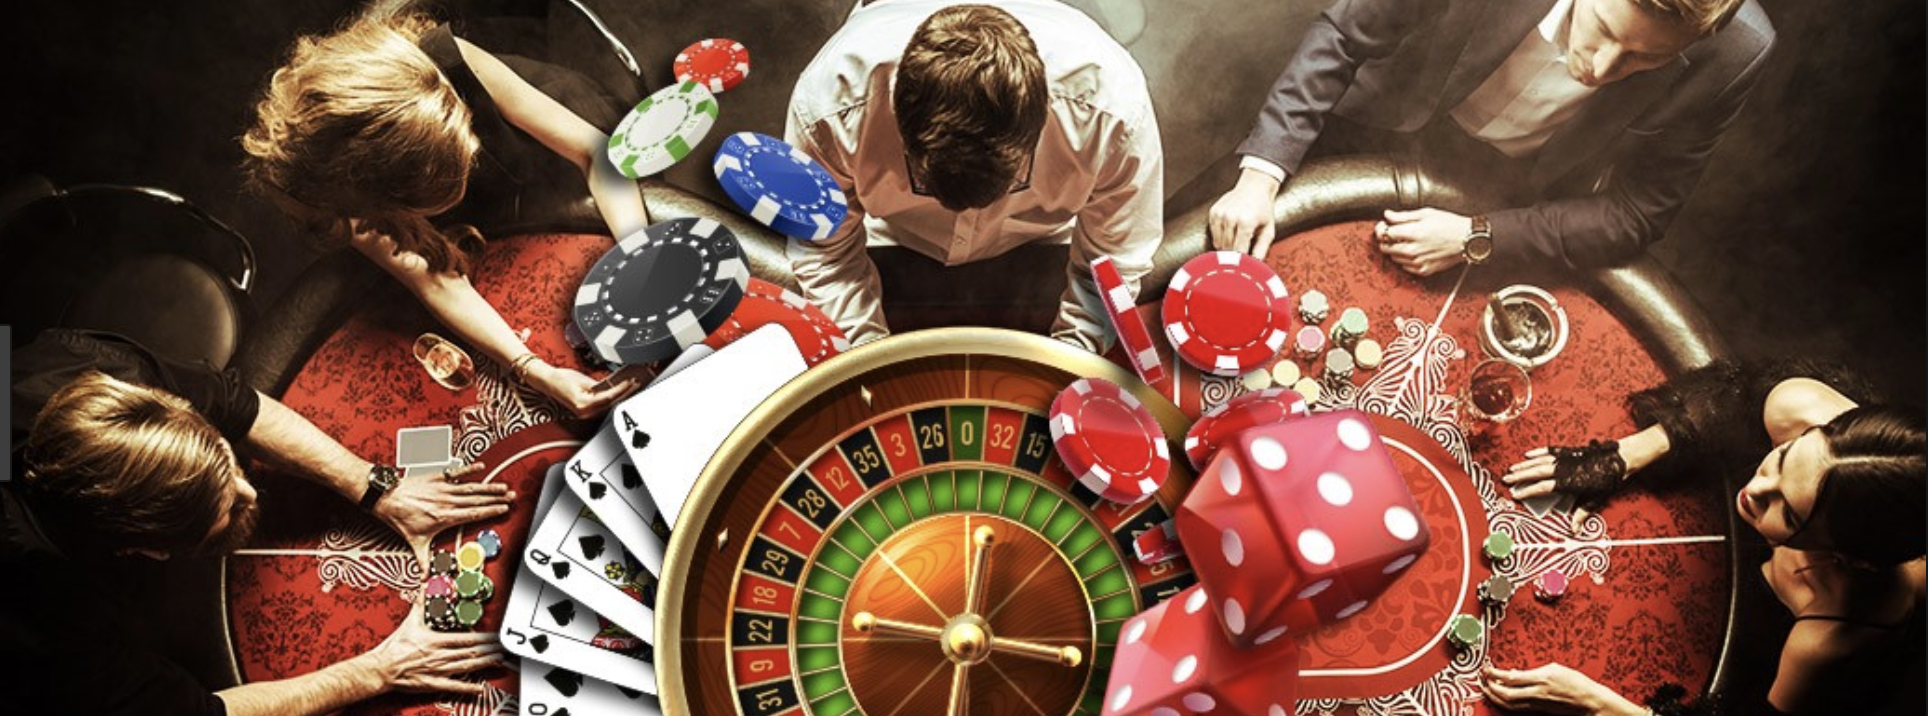 Зависим от азартных игр